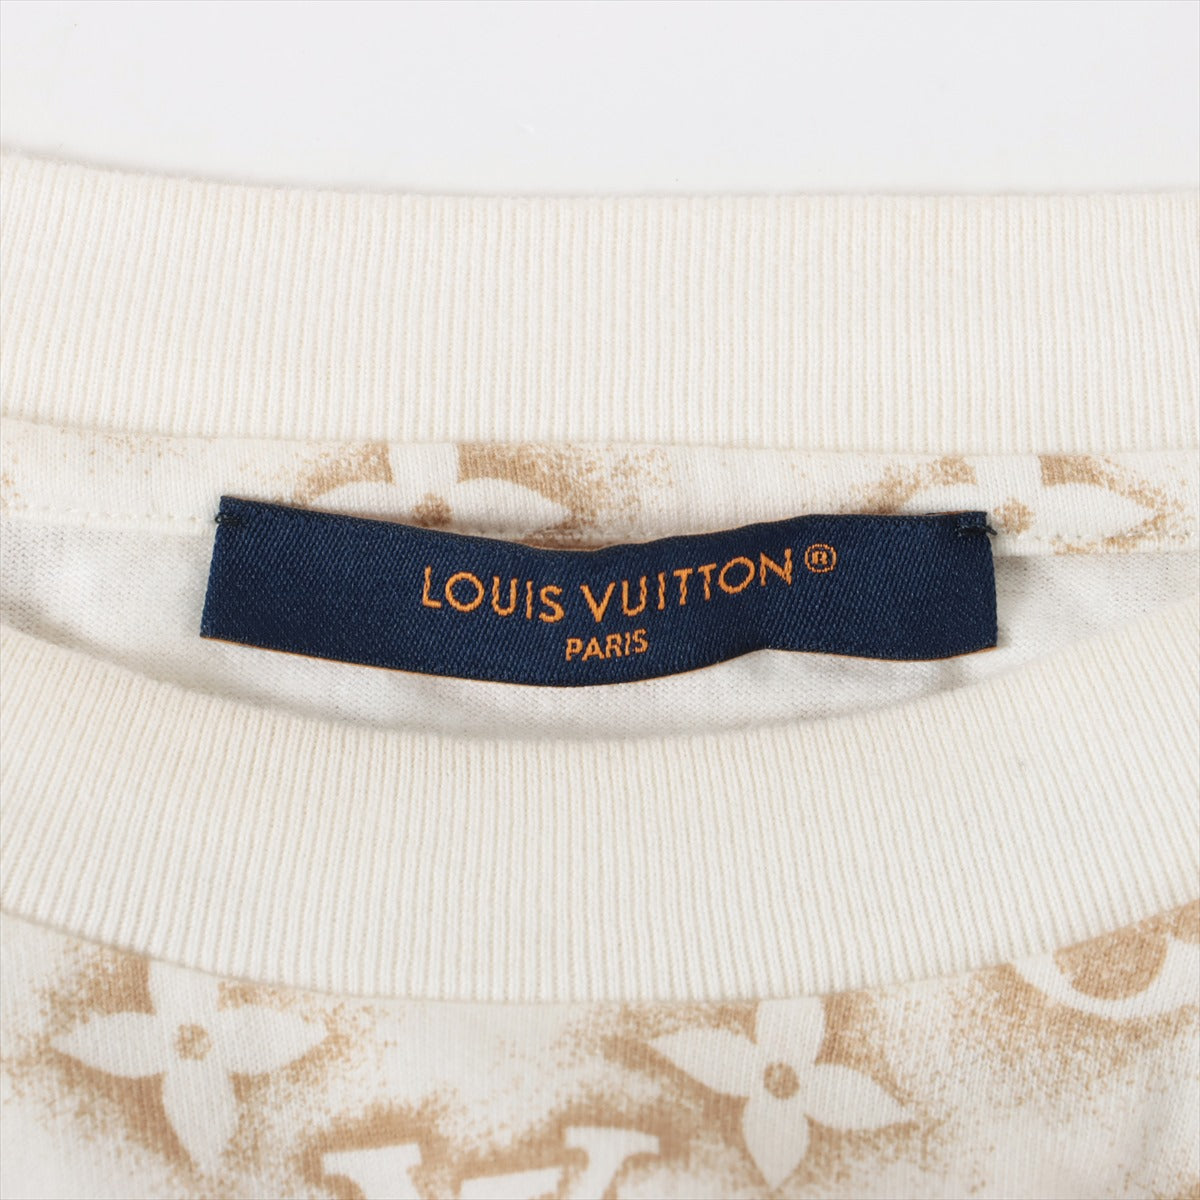 Louis Vuitton 23AW Cotton T-shirt S Men's Beige x white  Monogram INSIDE OUT RM232M